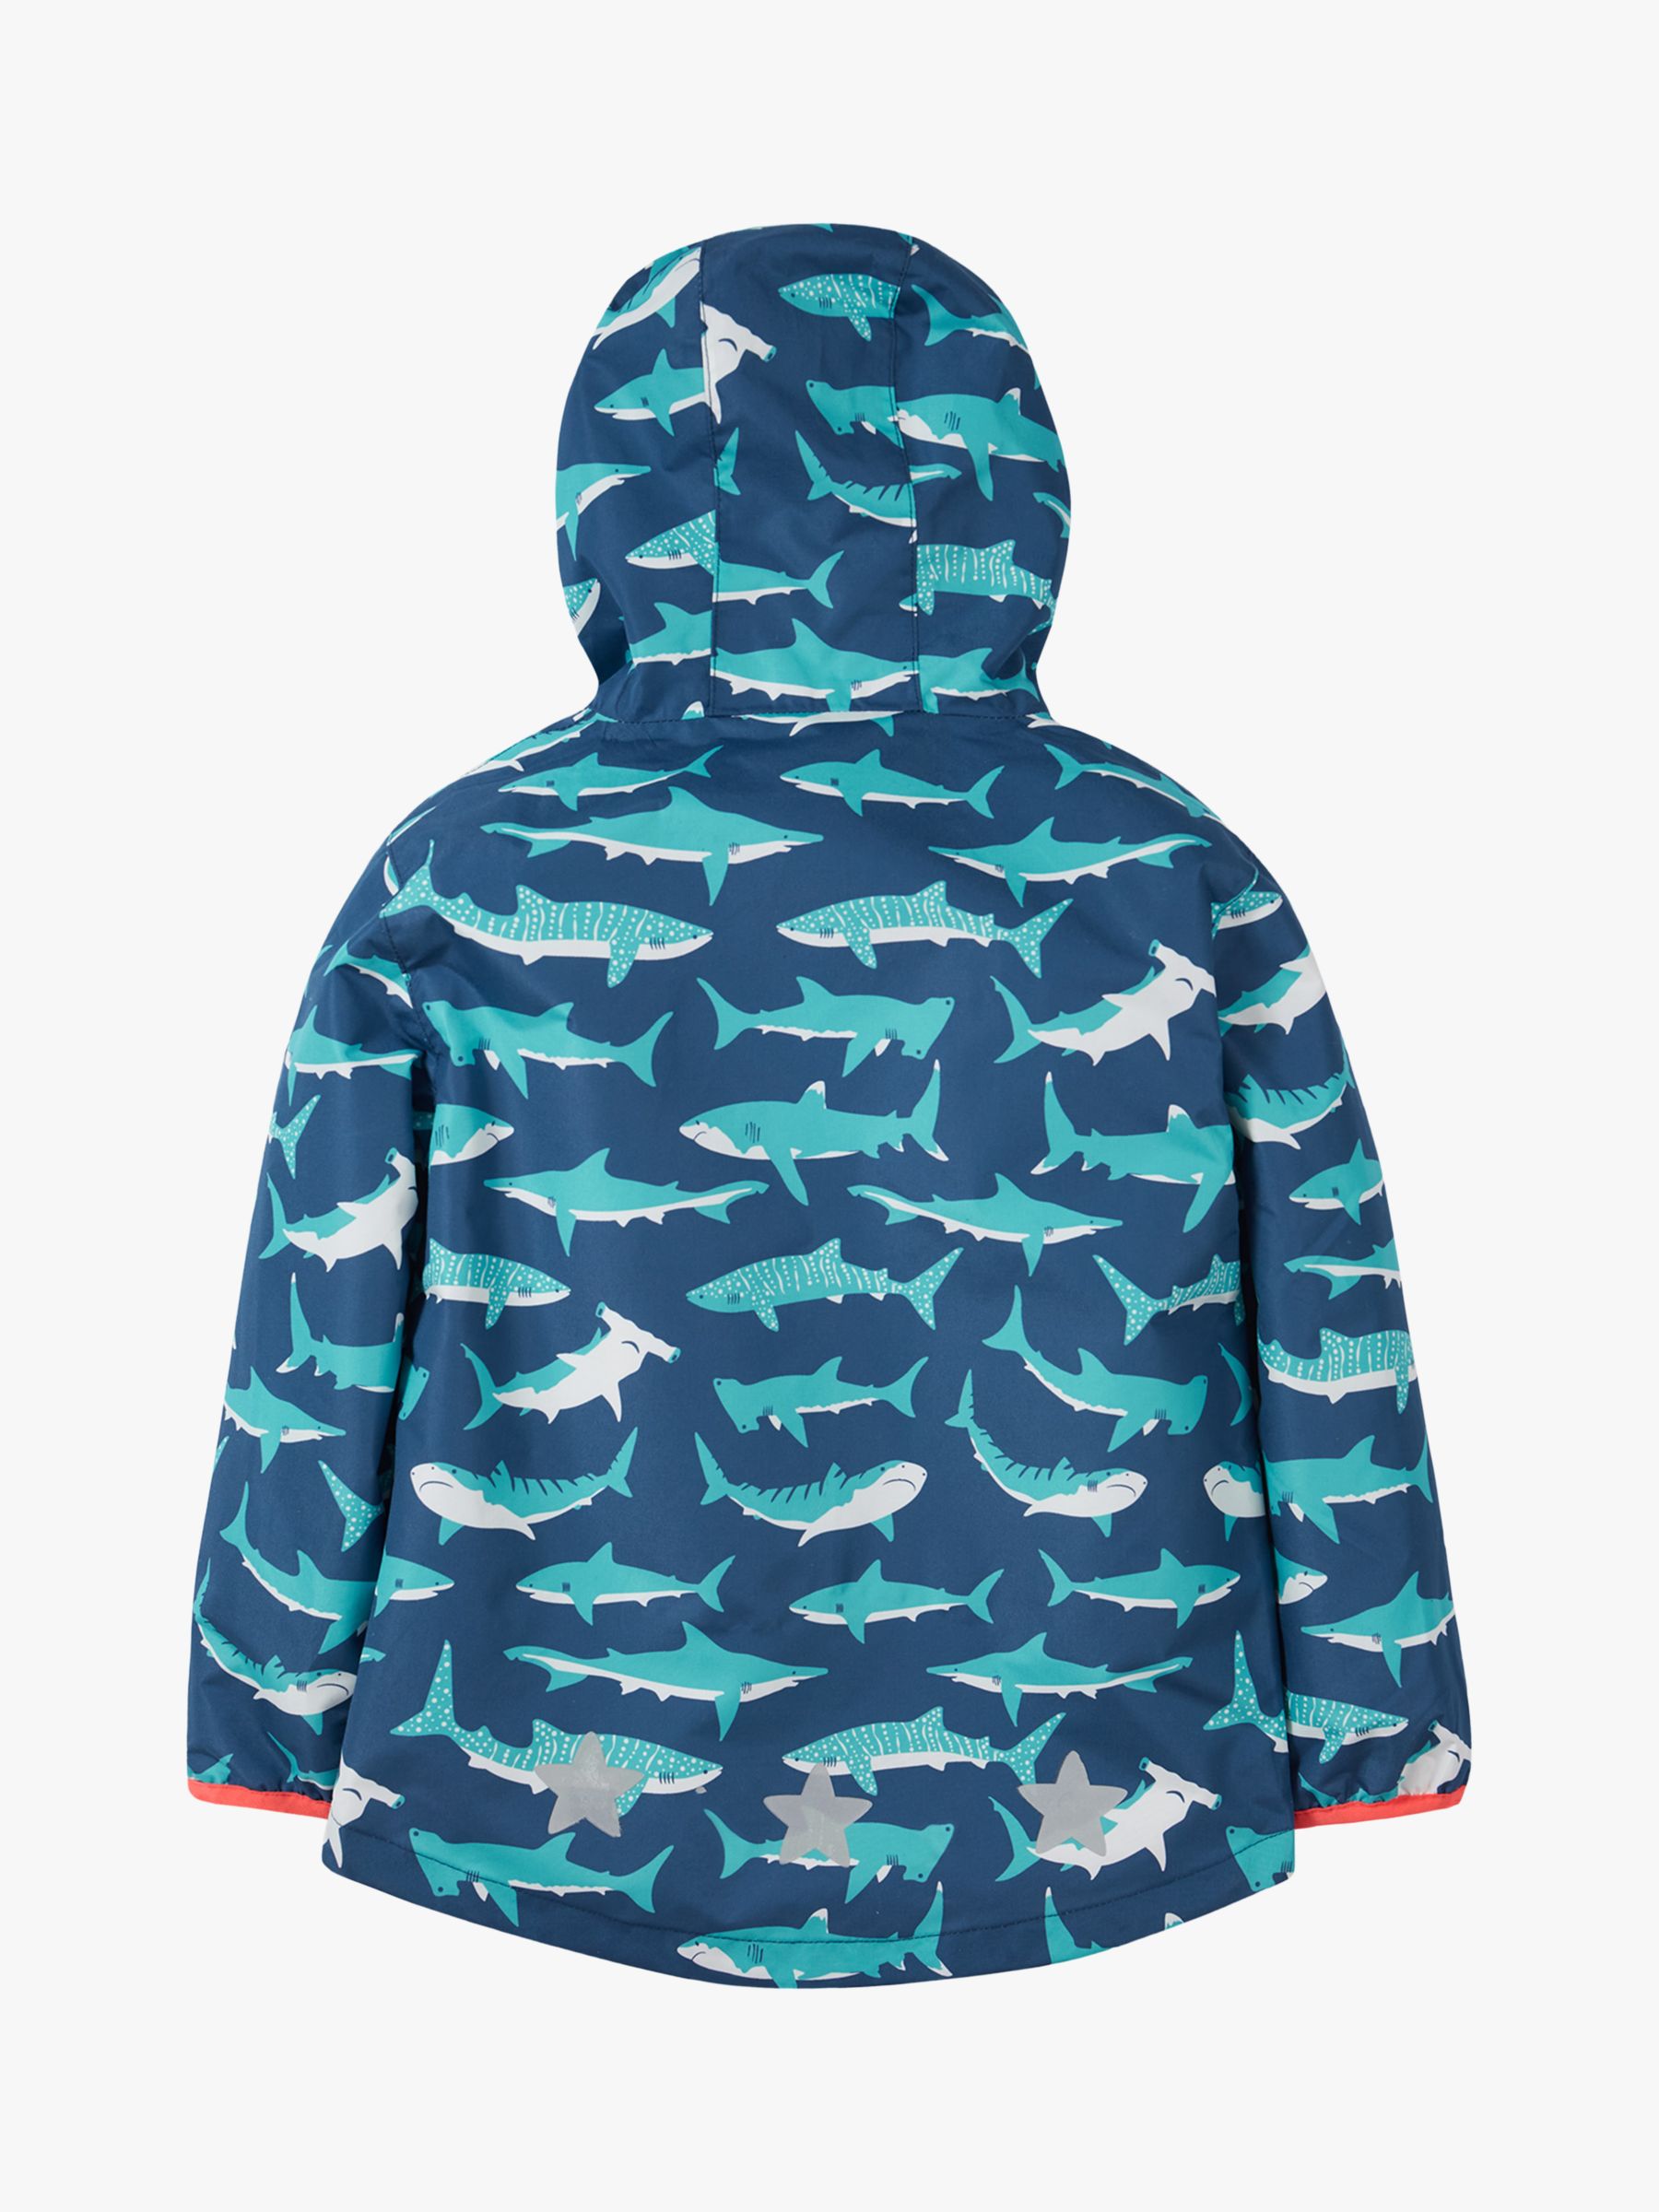 Buy Frugi Kids' Rain Or Shine Waterproof Hooded Jacket, Tropical Sea Shark Online at johnlewis.com